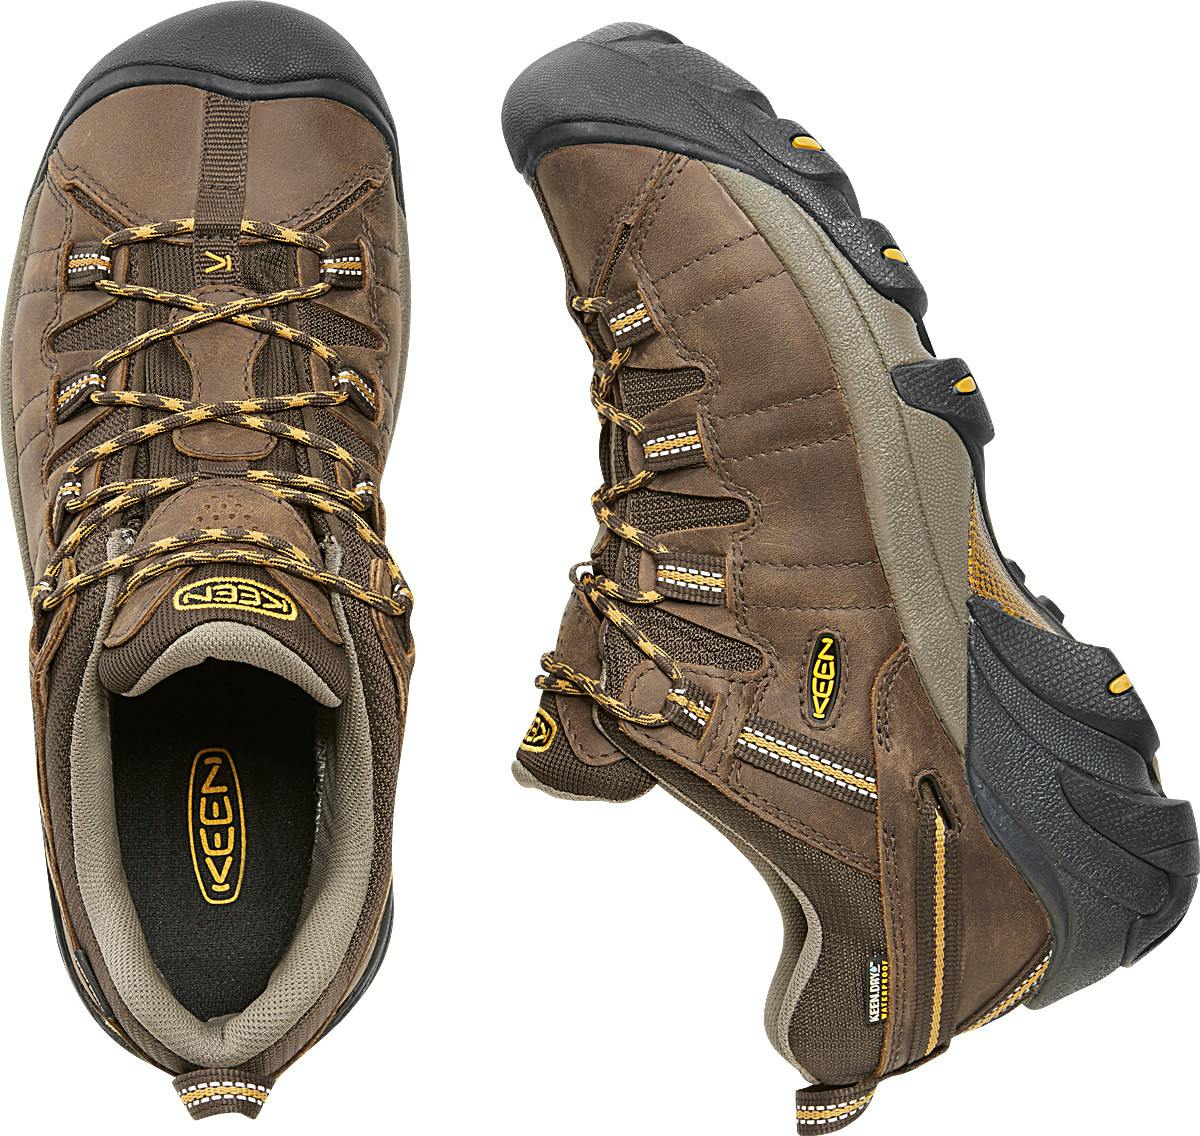 Targhee II Low Waterproof Light Trail Shoes Cascade Brown/Golden Yell